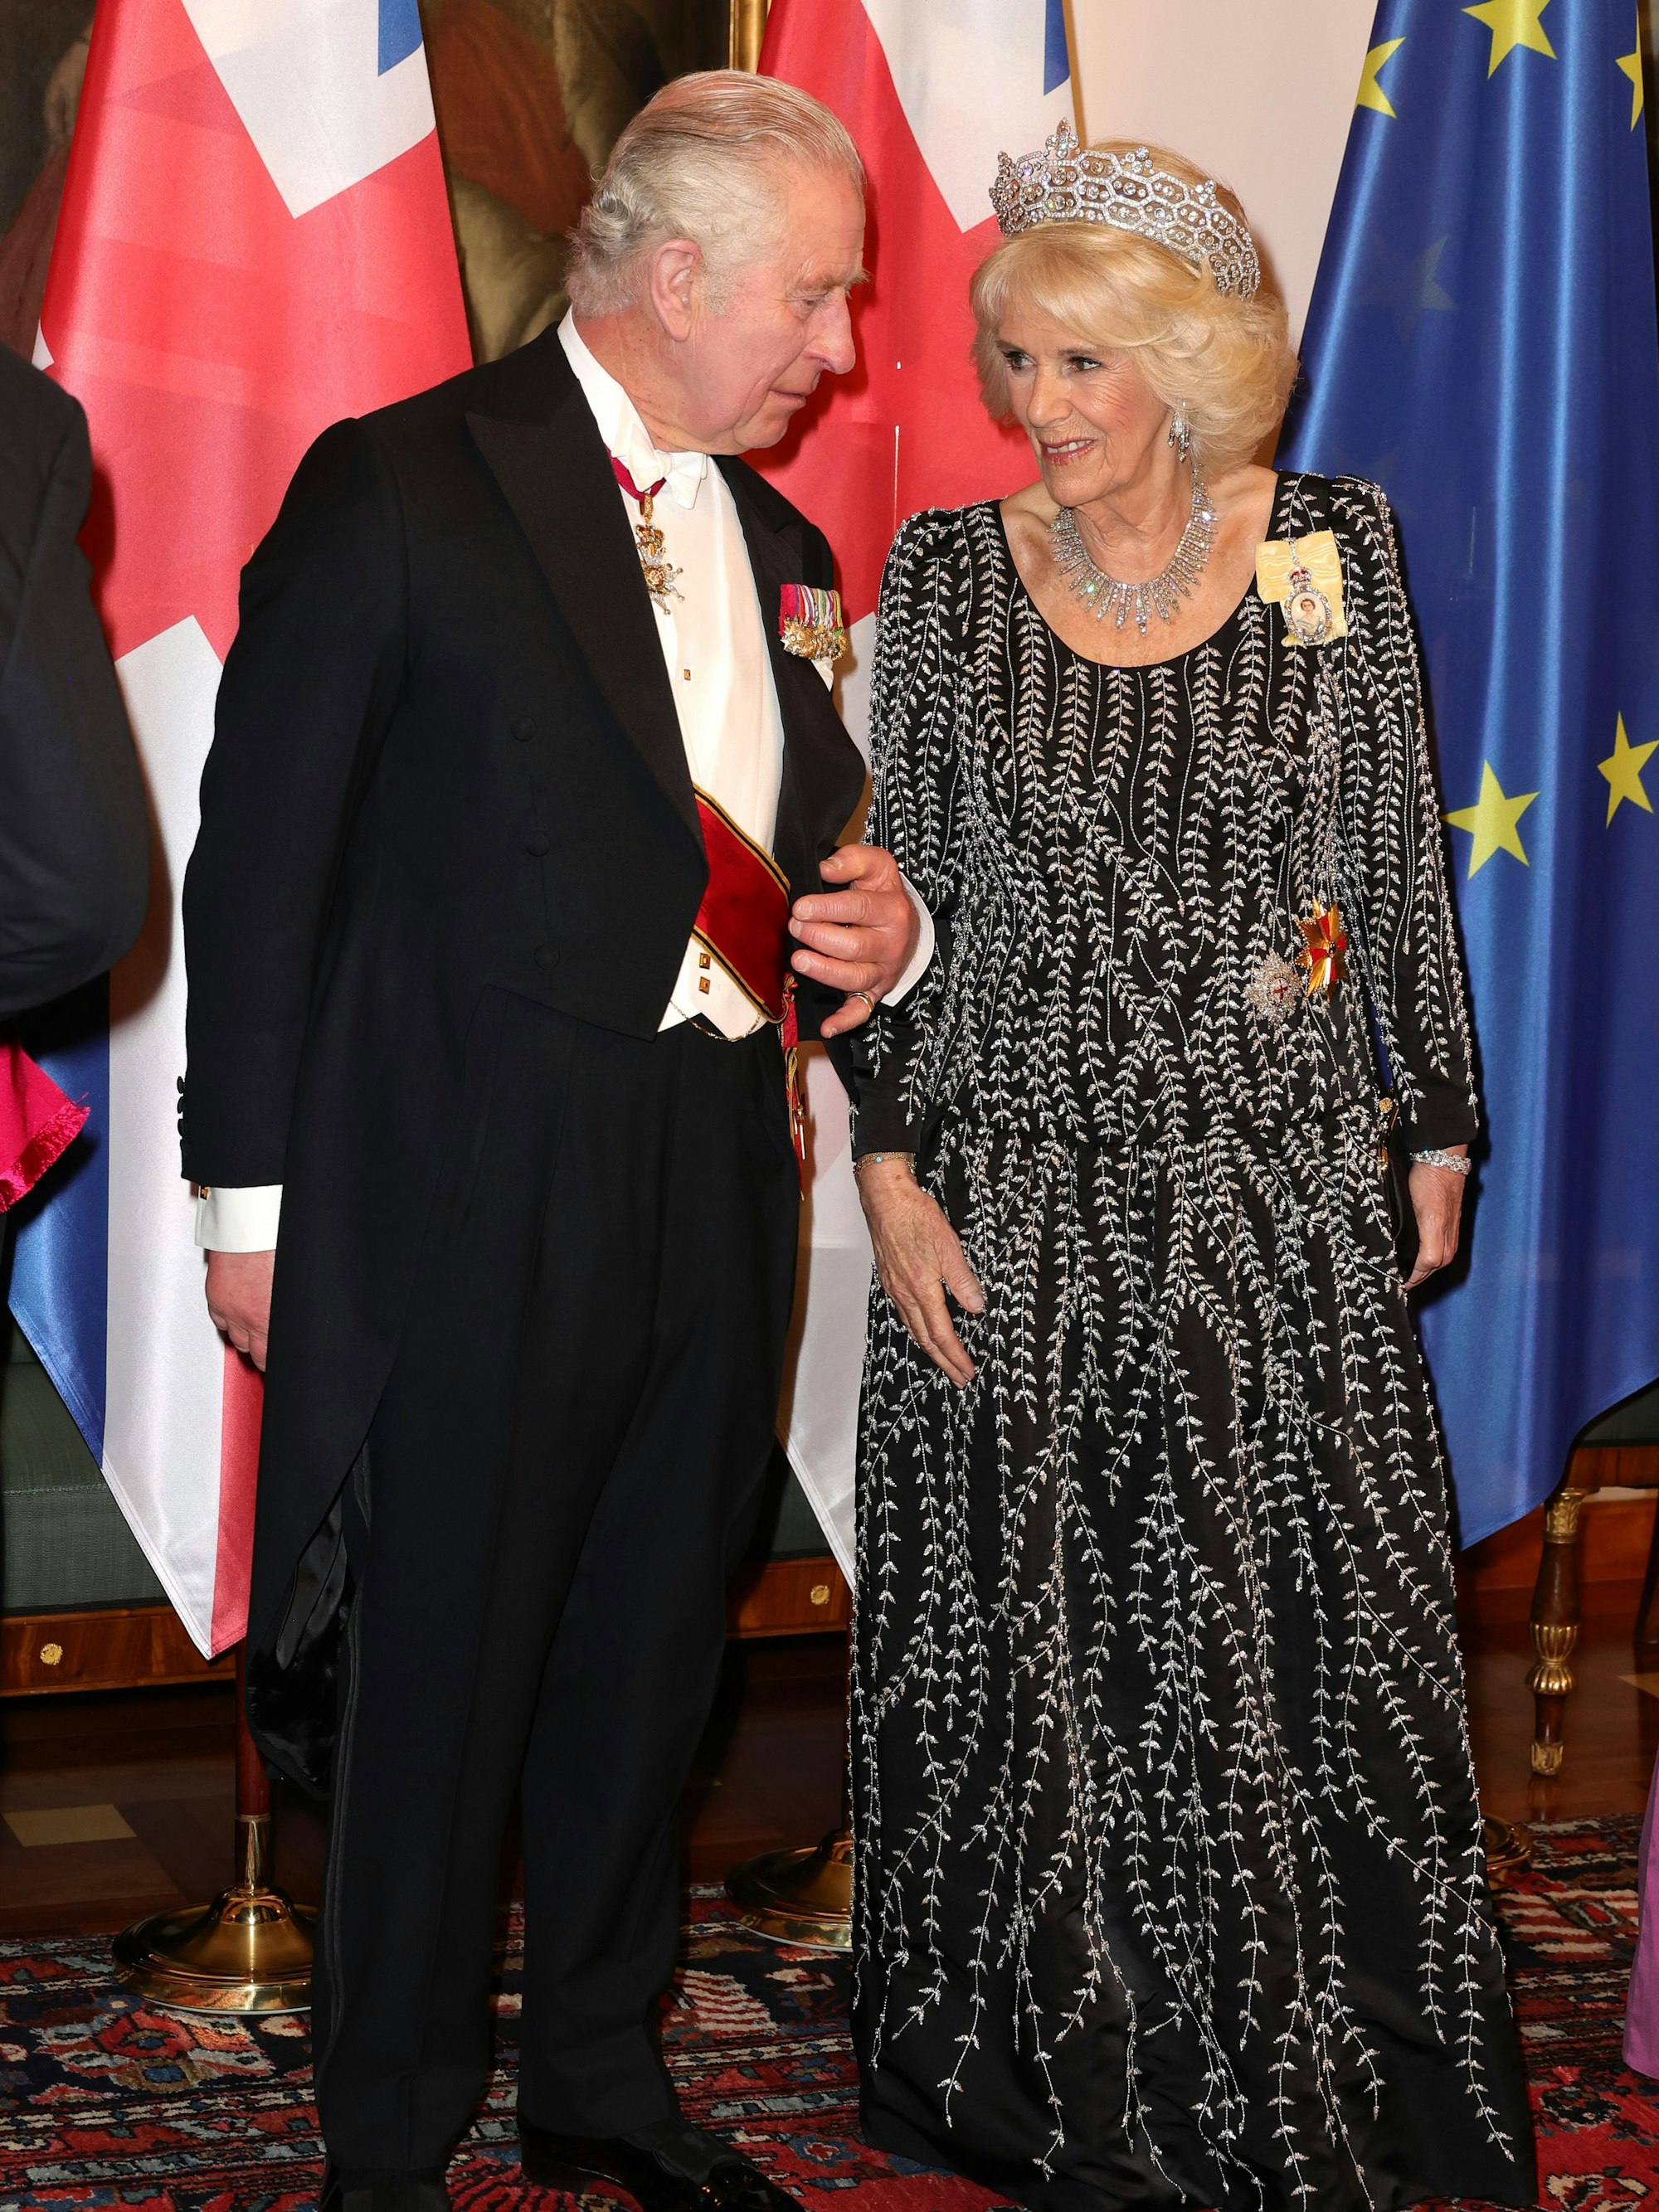 König Charles III. und Königin Camilla beim feierlichen Abendessen im Schloss Bellevue des deutschen Bundespräsidenten.